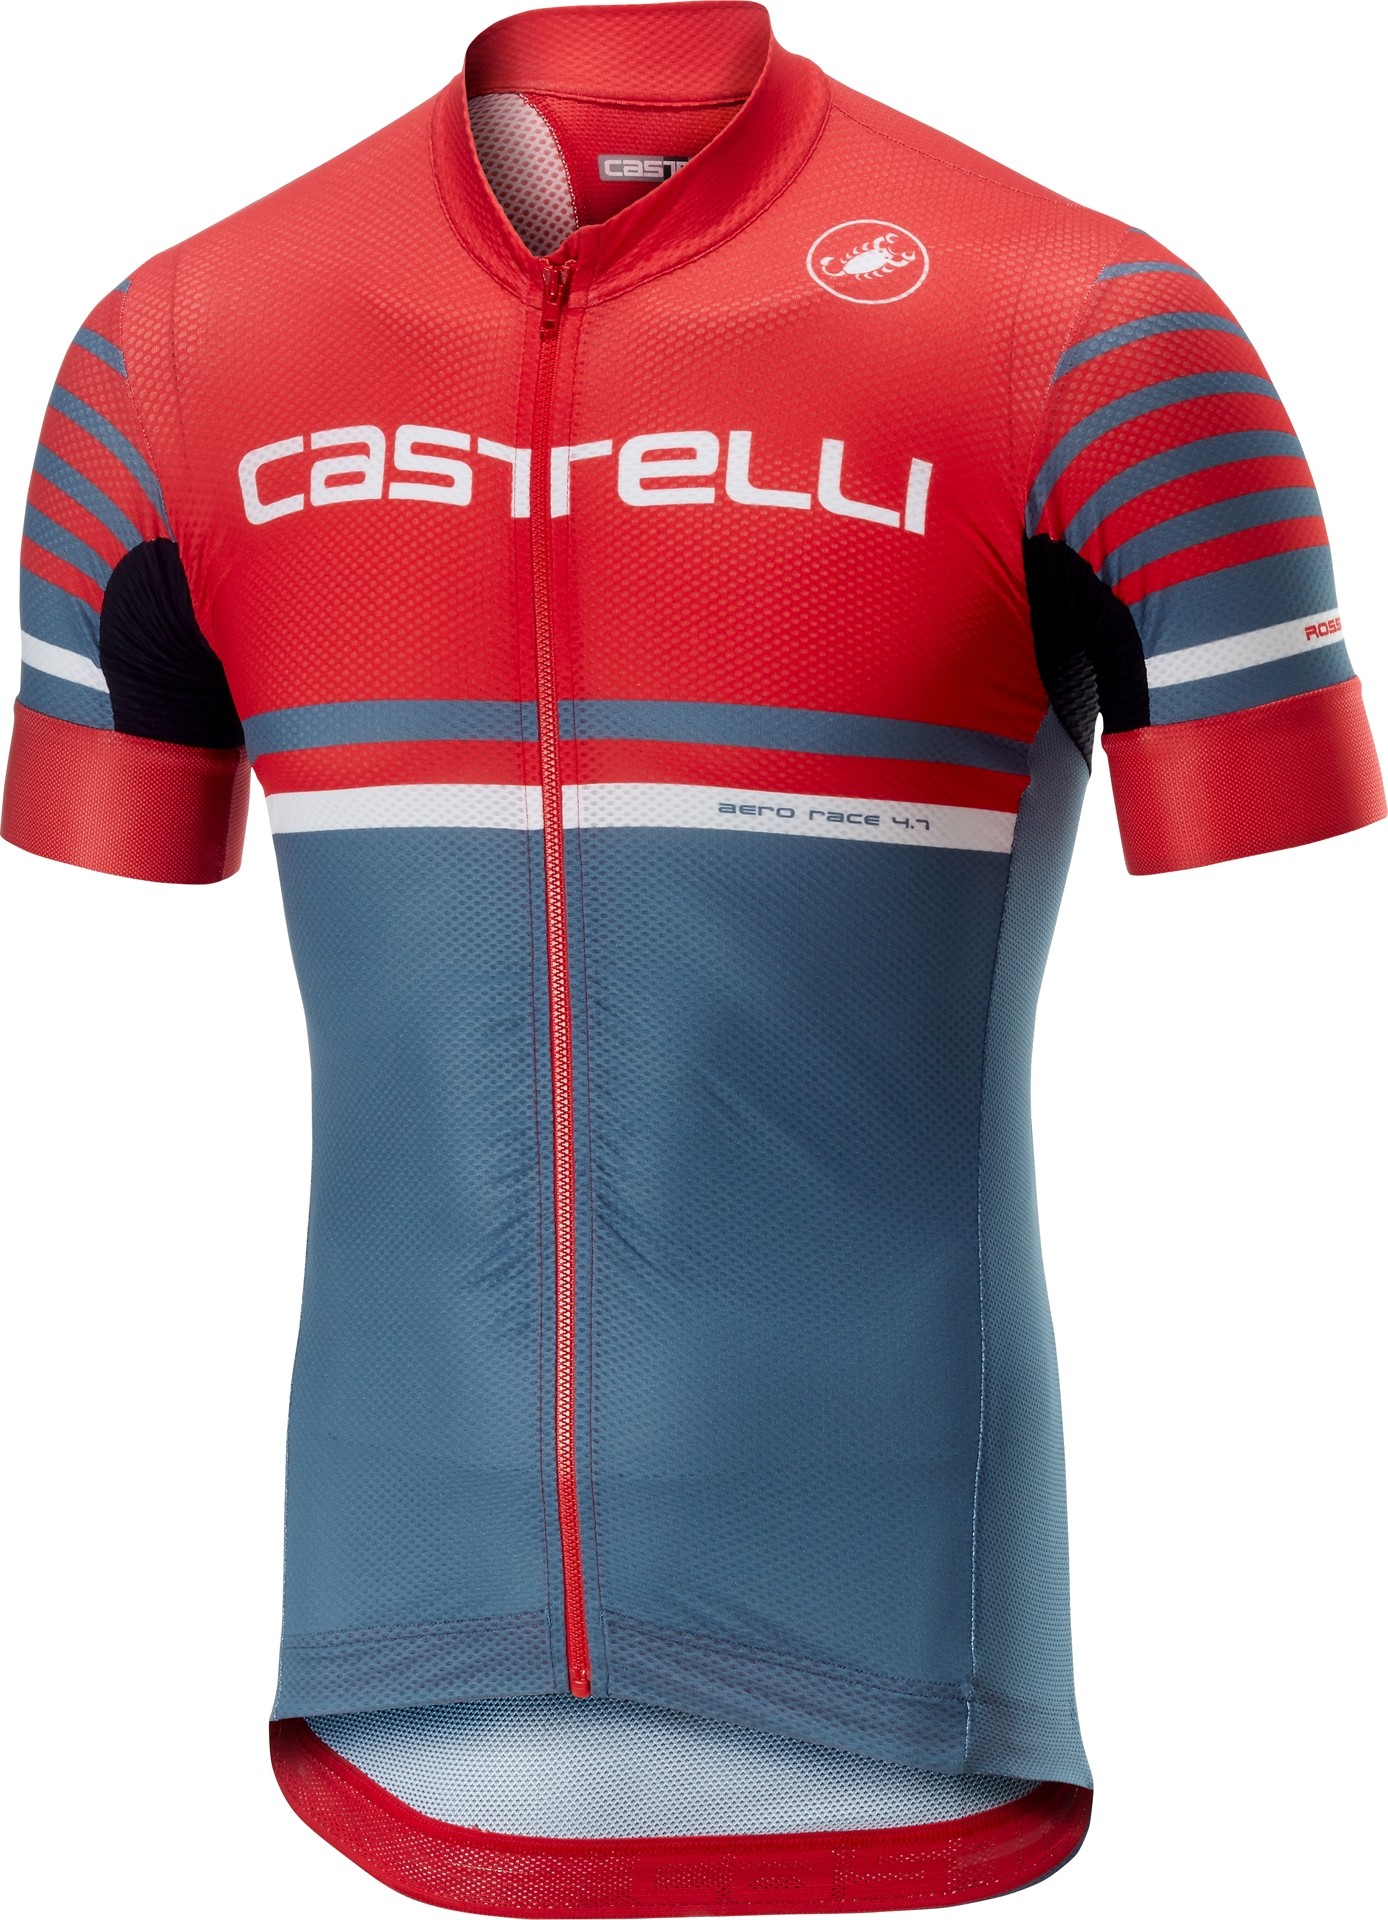 Castelli free ar 4.1 maillot de cyclisme manches courtes rouge steel bleu clair